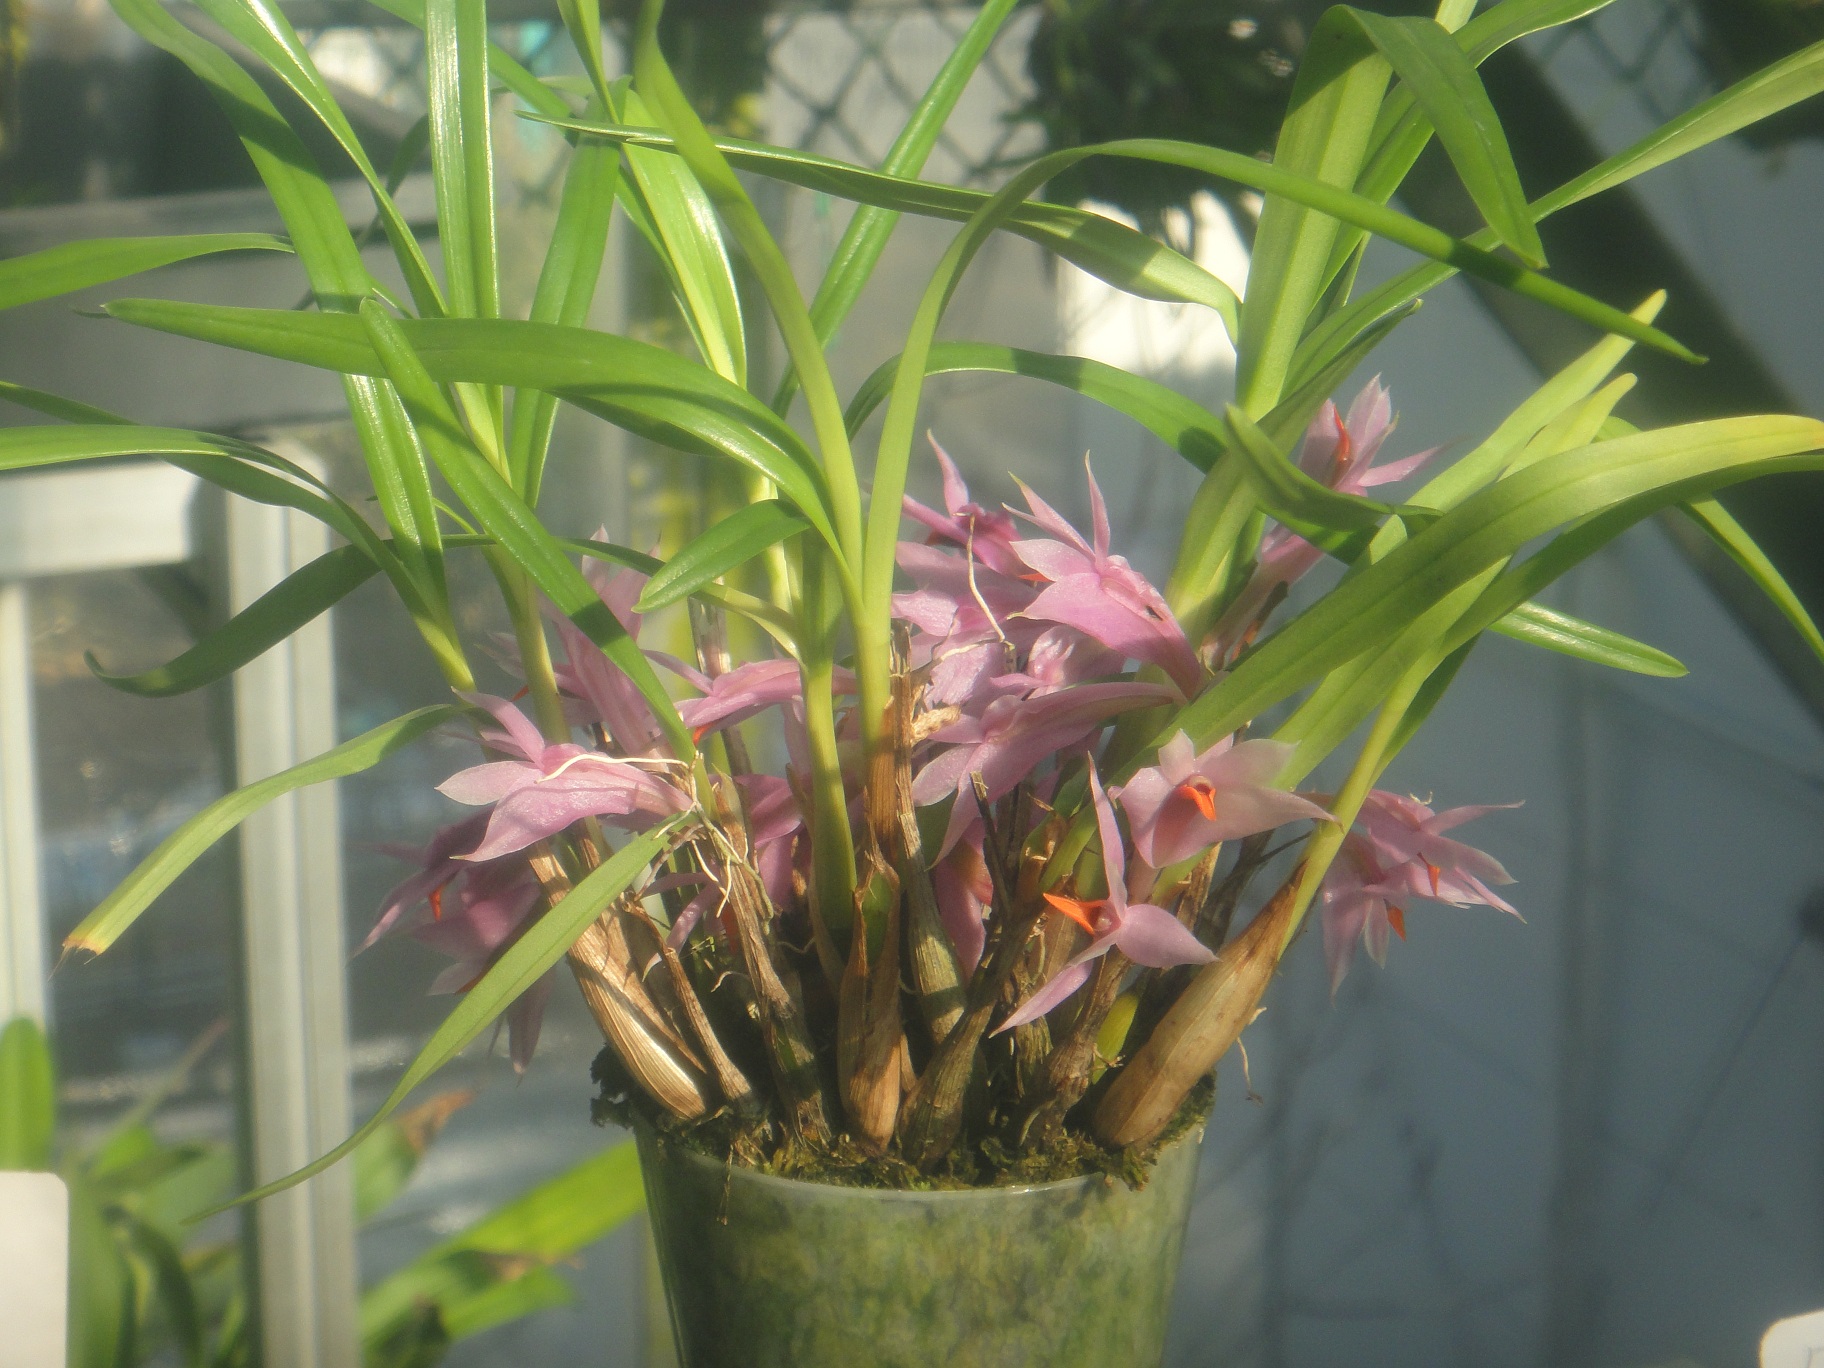 http://orchids.la.coocan.jp/Dendrobium/Dendrobium%20violaceum/DSC09211.JPG